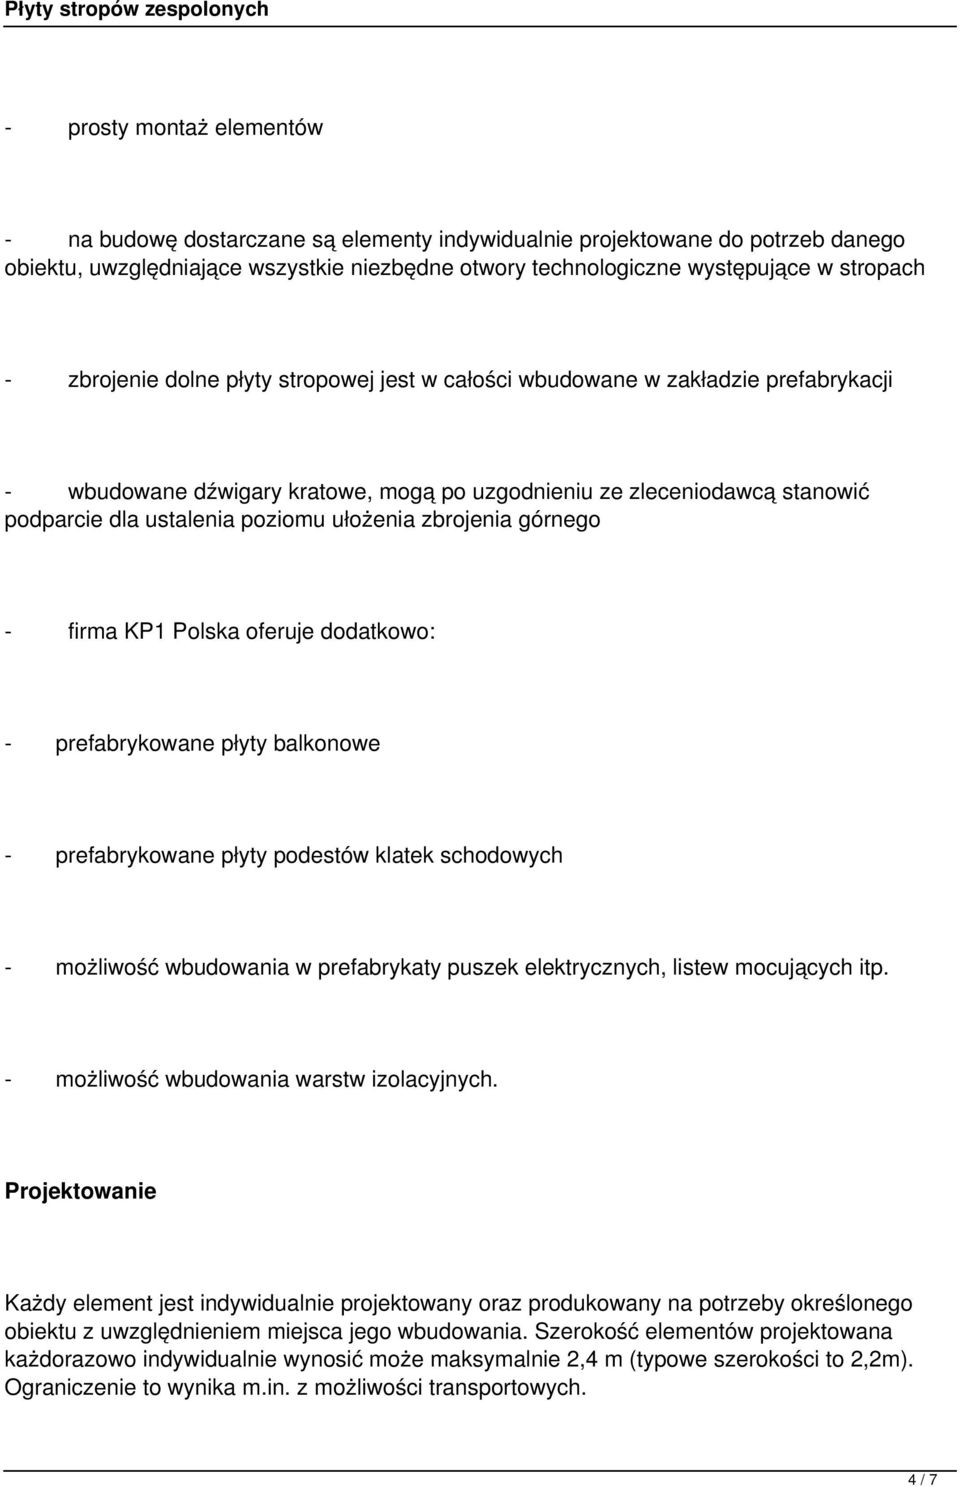 zbrojenia górnego - firma KP1 Polska oferuje dodatkowo: - prefabrykowane płyty balkonowe - prefabrykowane płyty podestów klatek schodowych - możliwość wbudowania w prefabrykaty puszek elektrycznych,